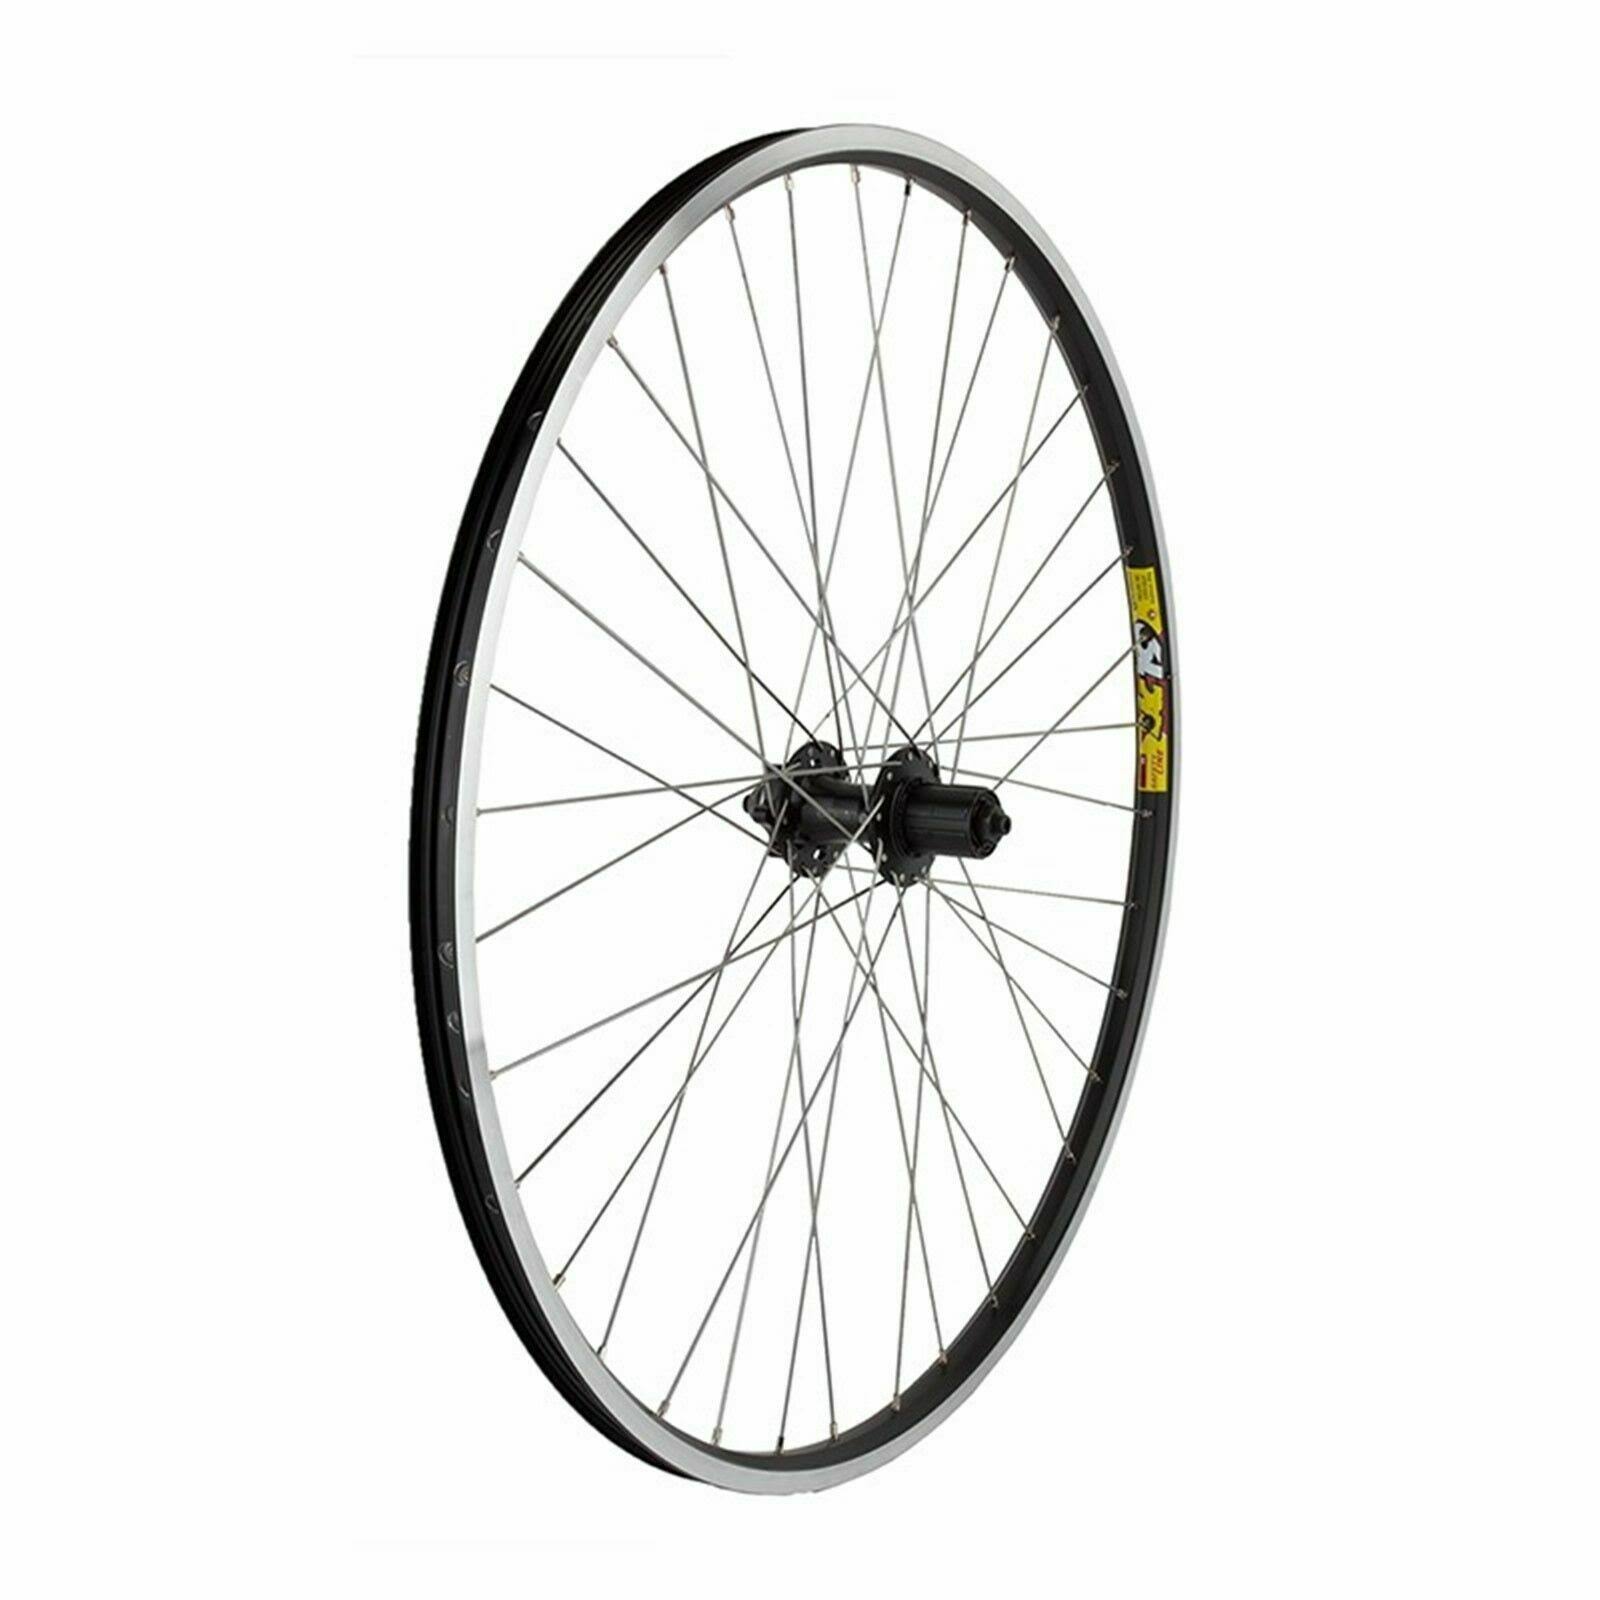 Wheel Master Disc Rear Bicycle Wheel - Black, 700c